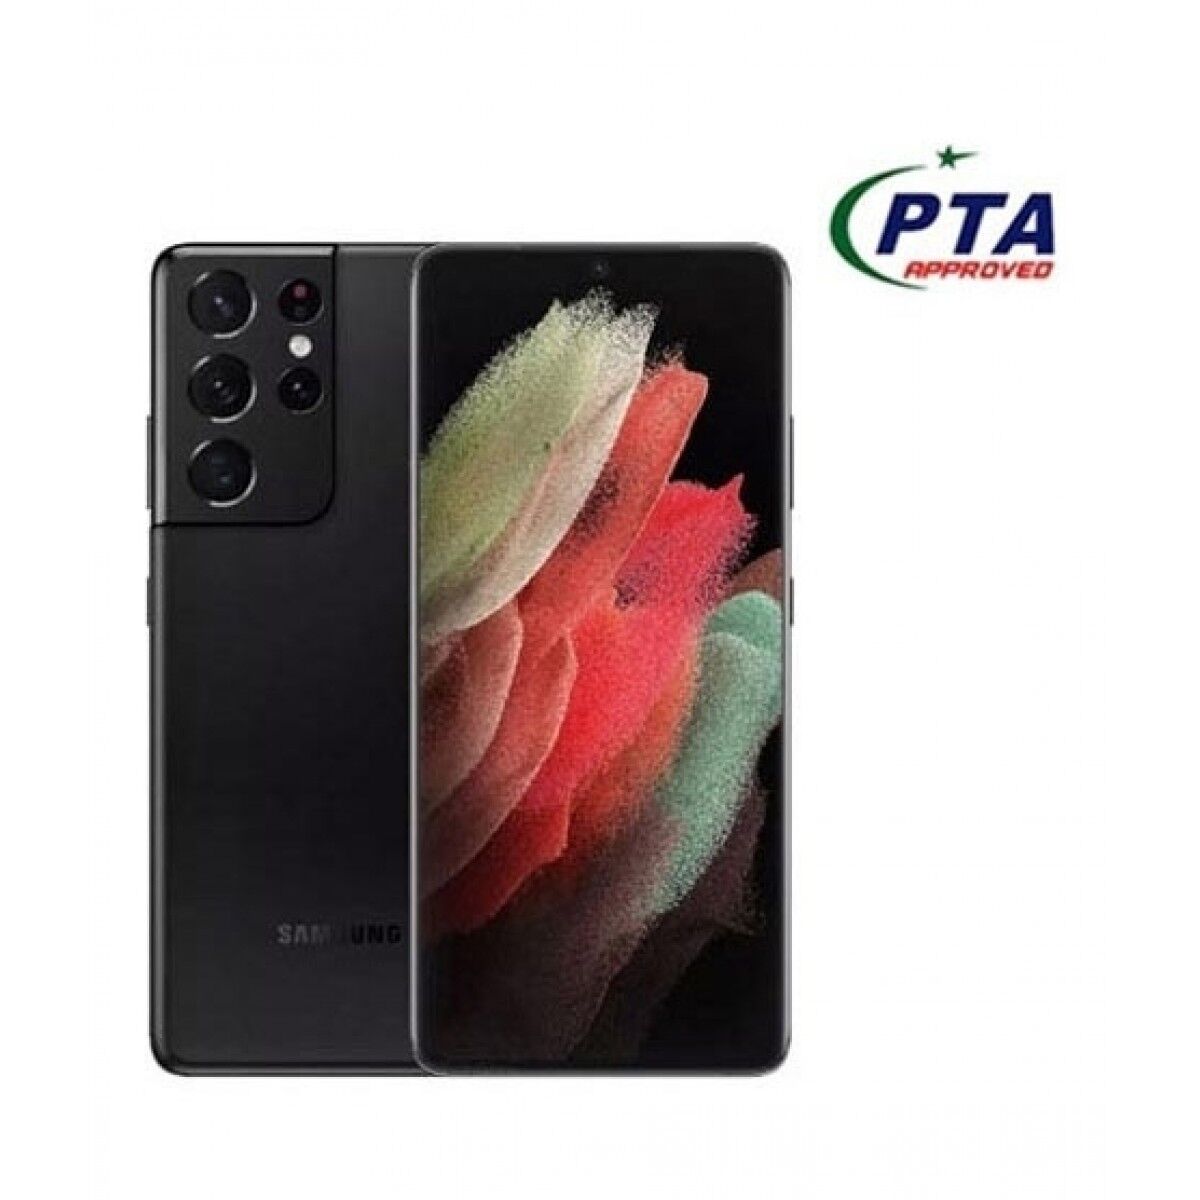 Samsung Galaxy S21 Ultra 256GB 12GB 5G Dual Sim Phantom Black - Official Warranty